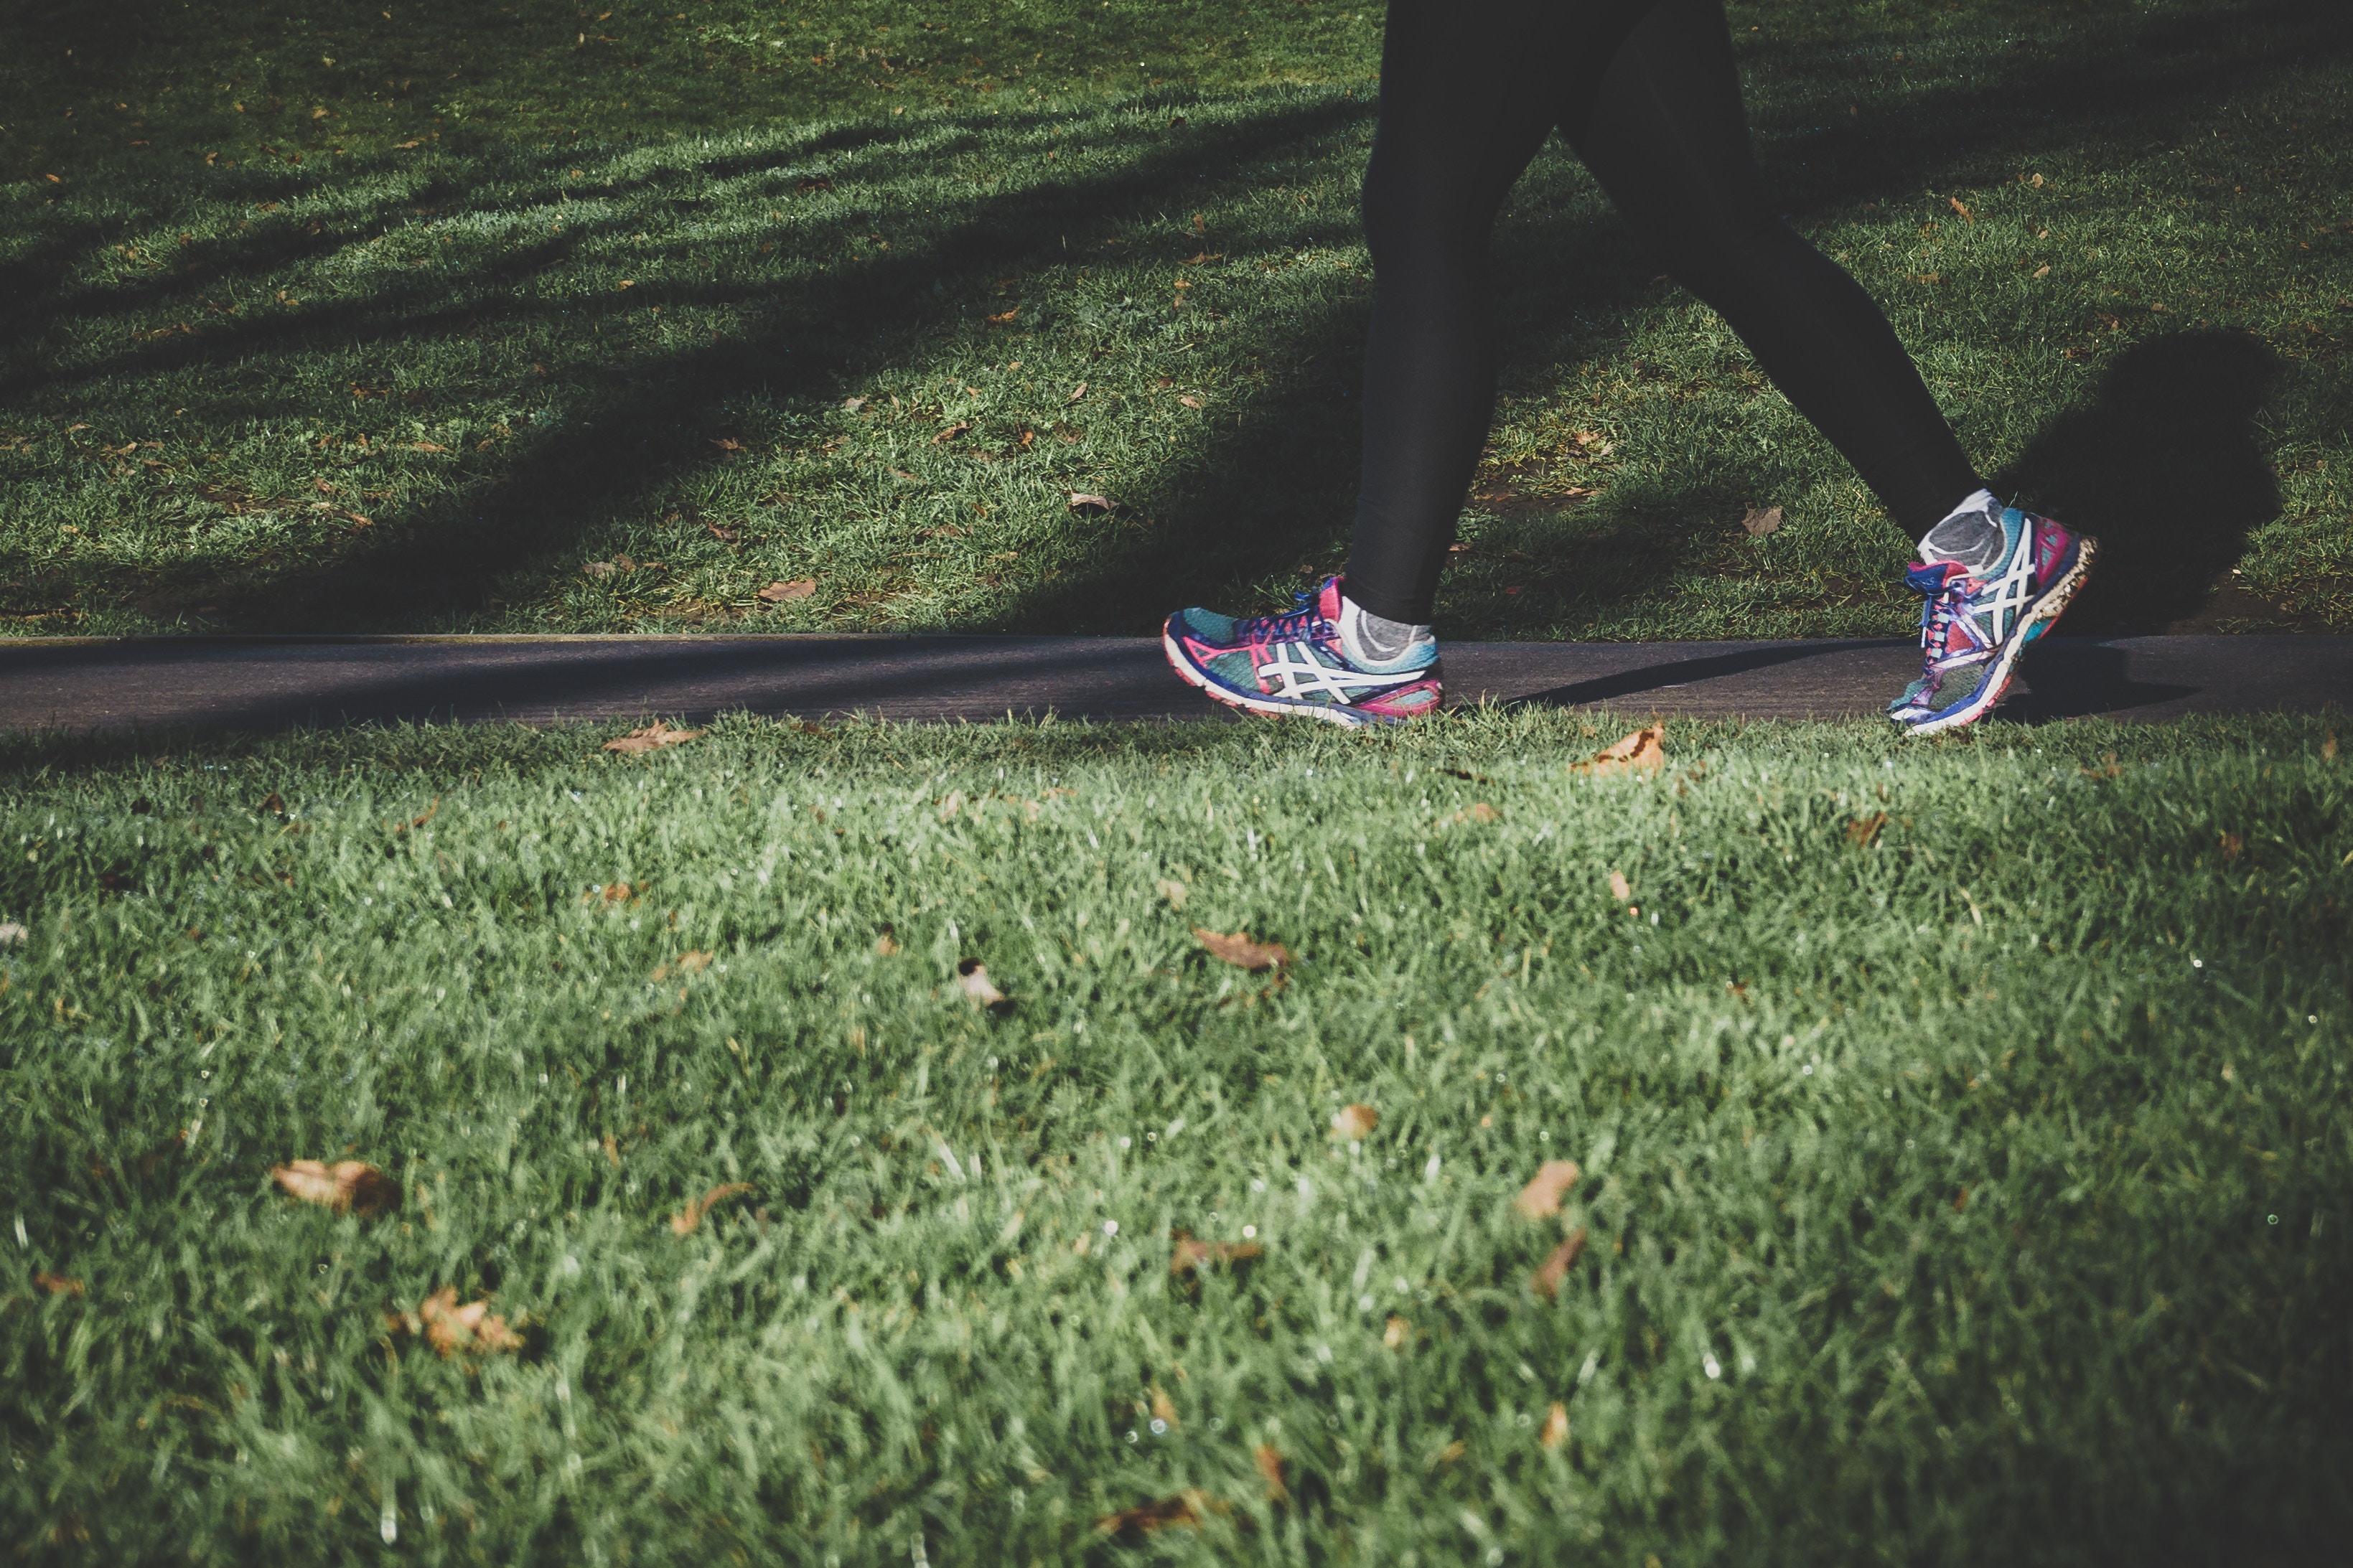 Läufer auf Weg im Gras, Beine und Schuhe im Bild